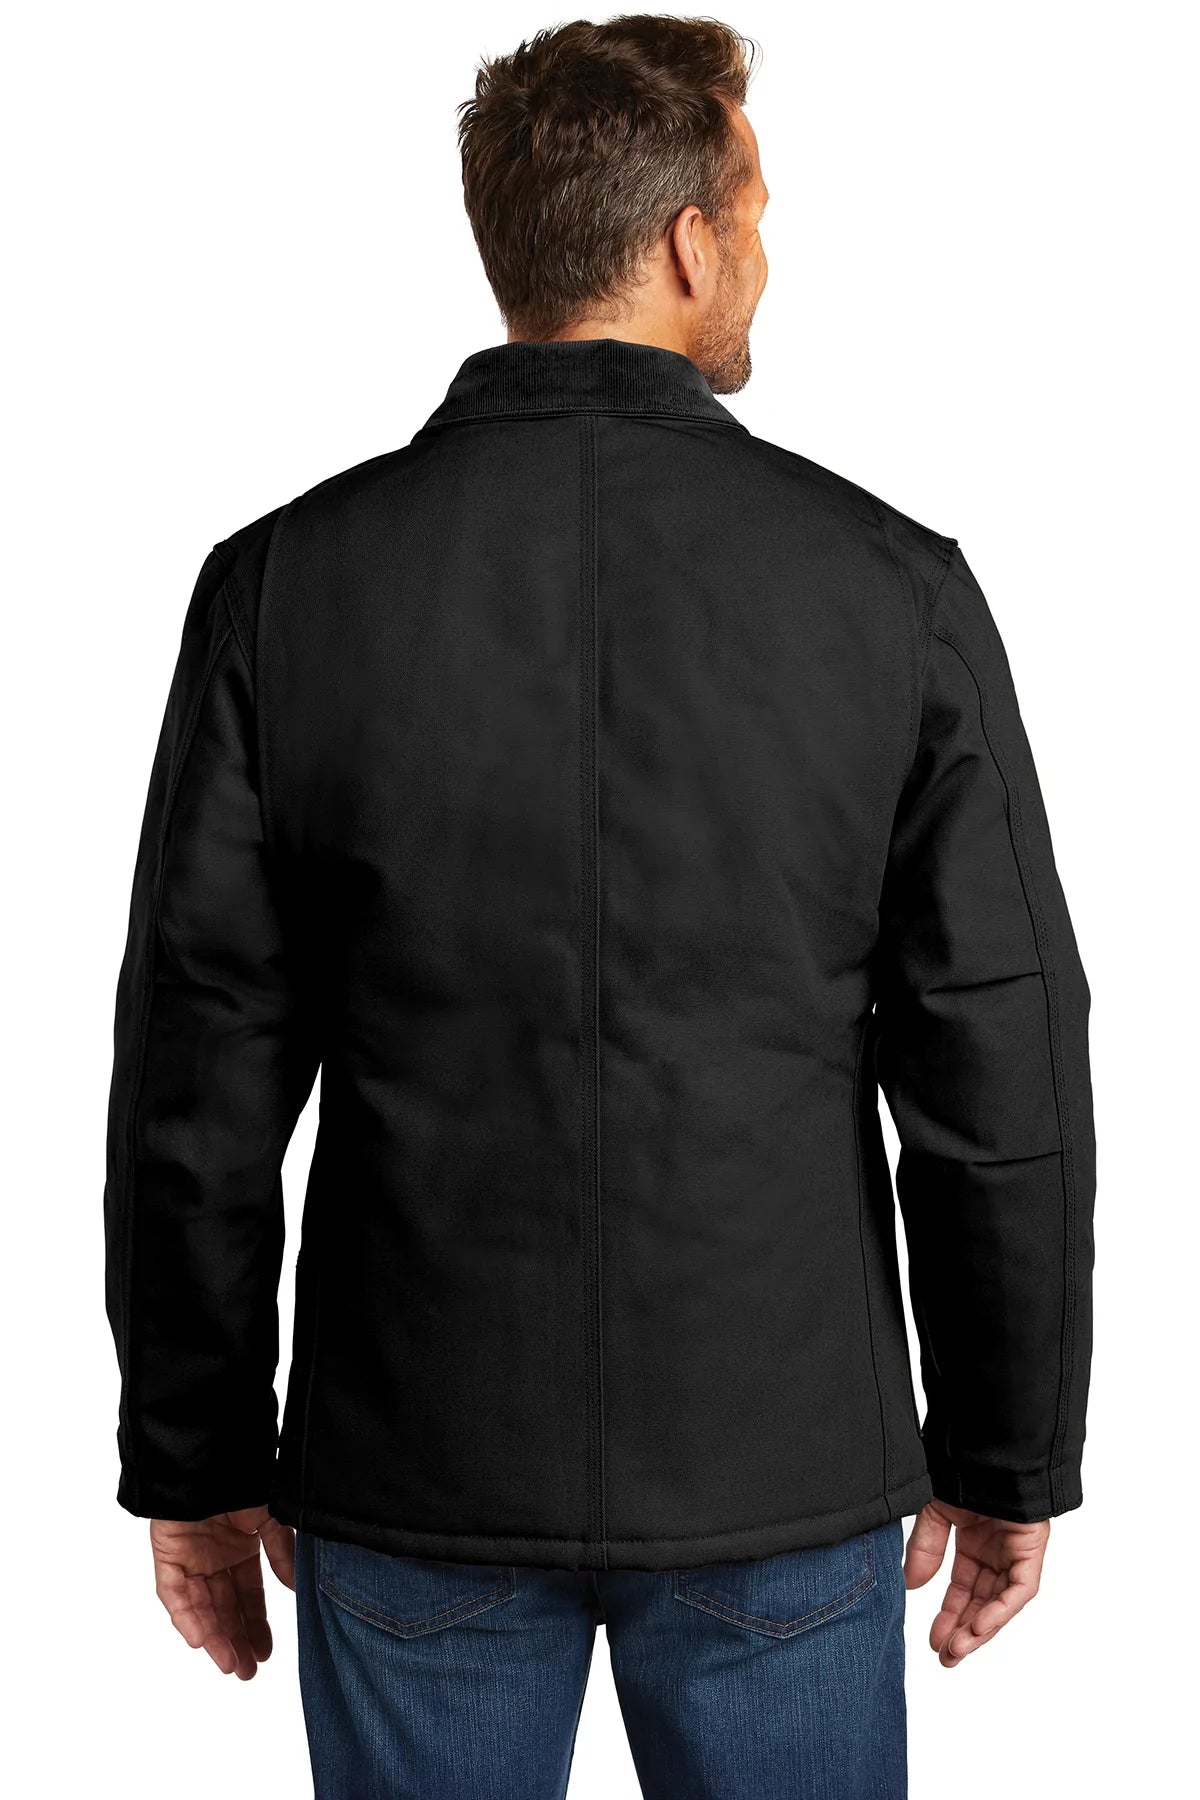 carhartt_cttc003 _black_company_logo_jackets